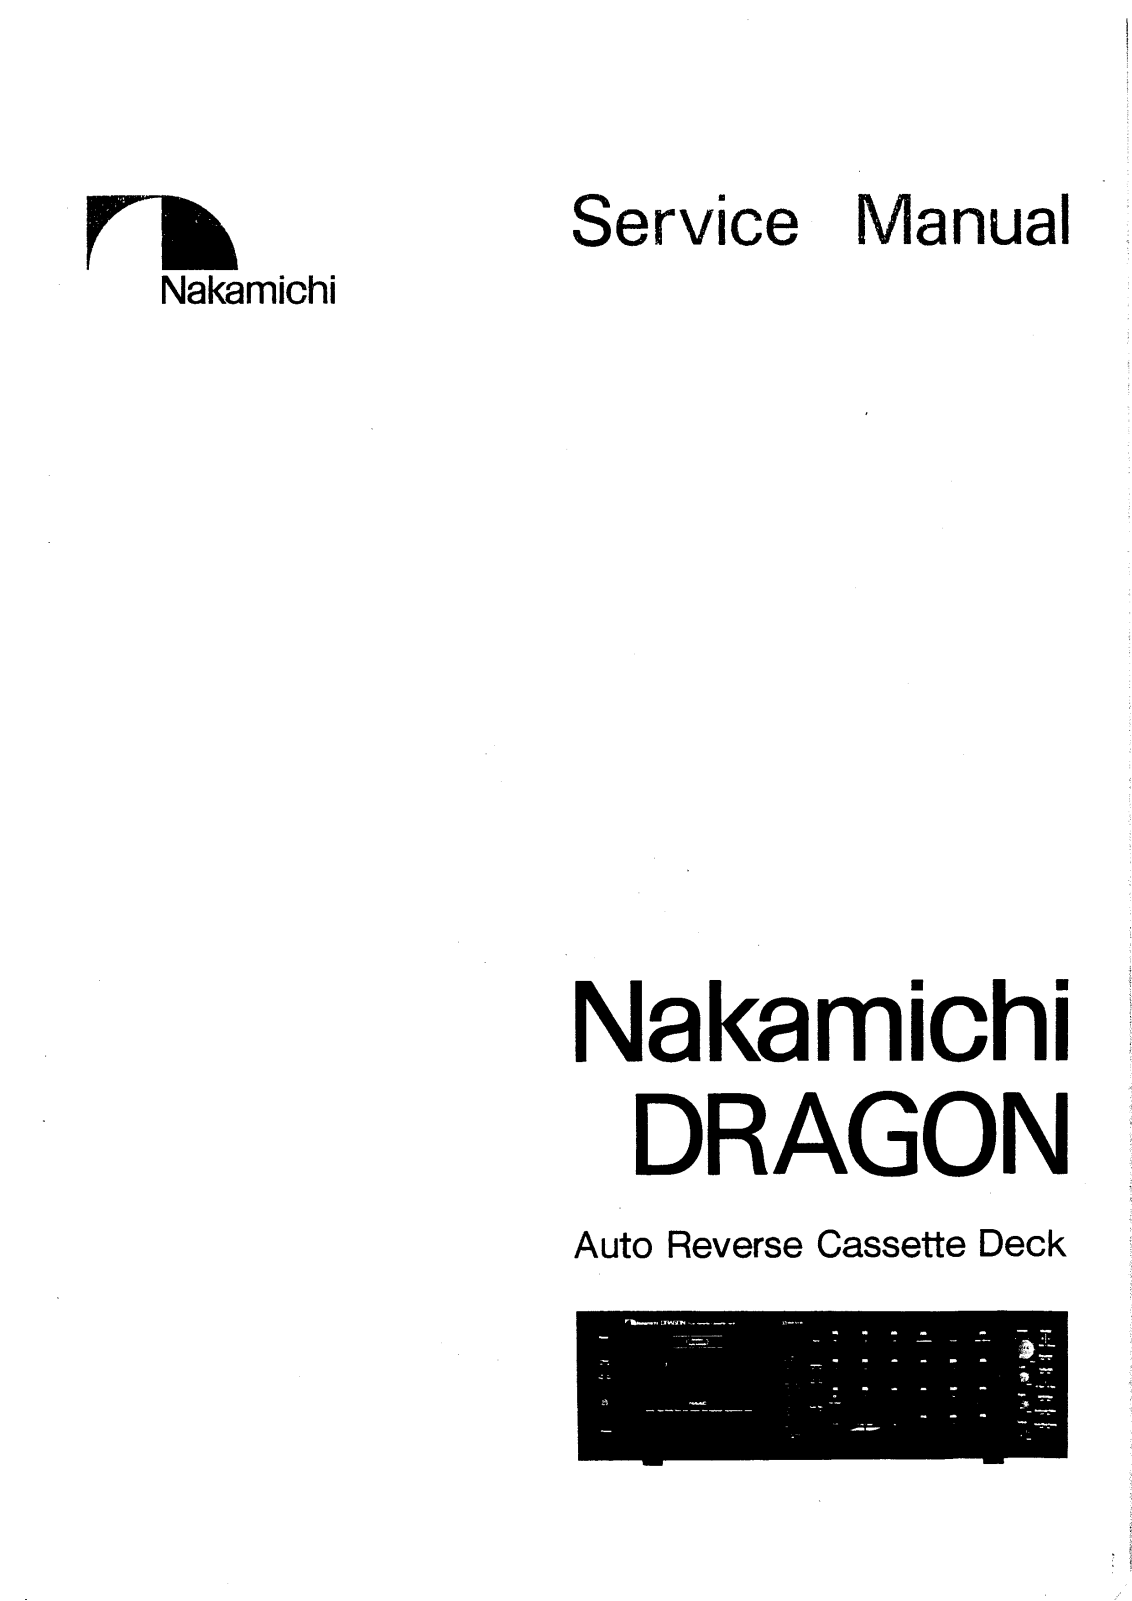 Nakamichi Dragon Service Manual